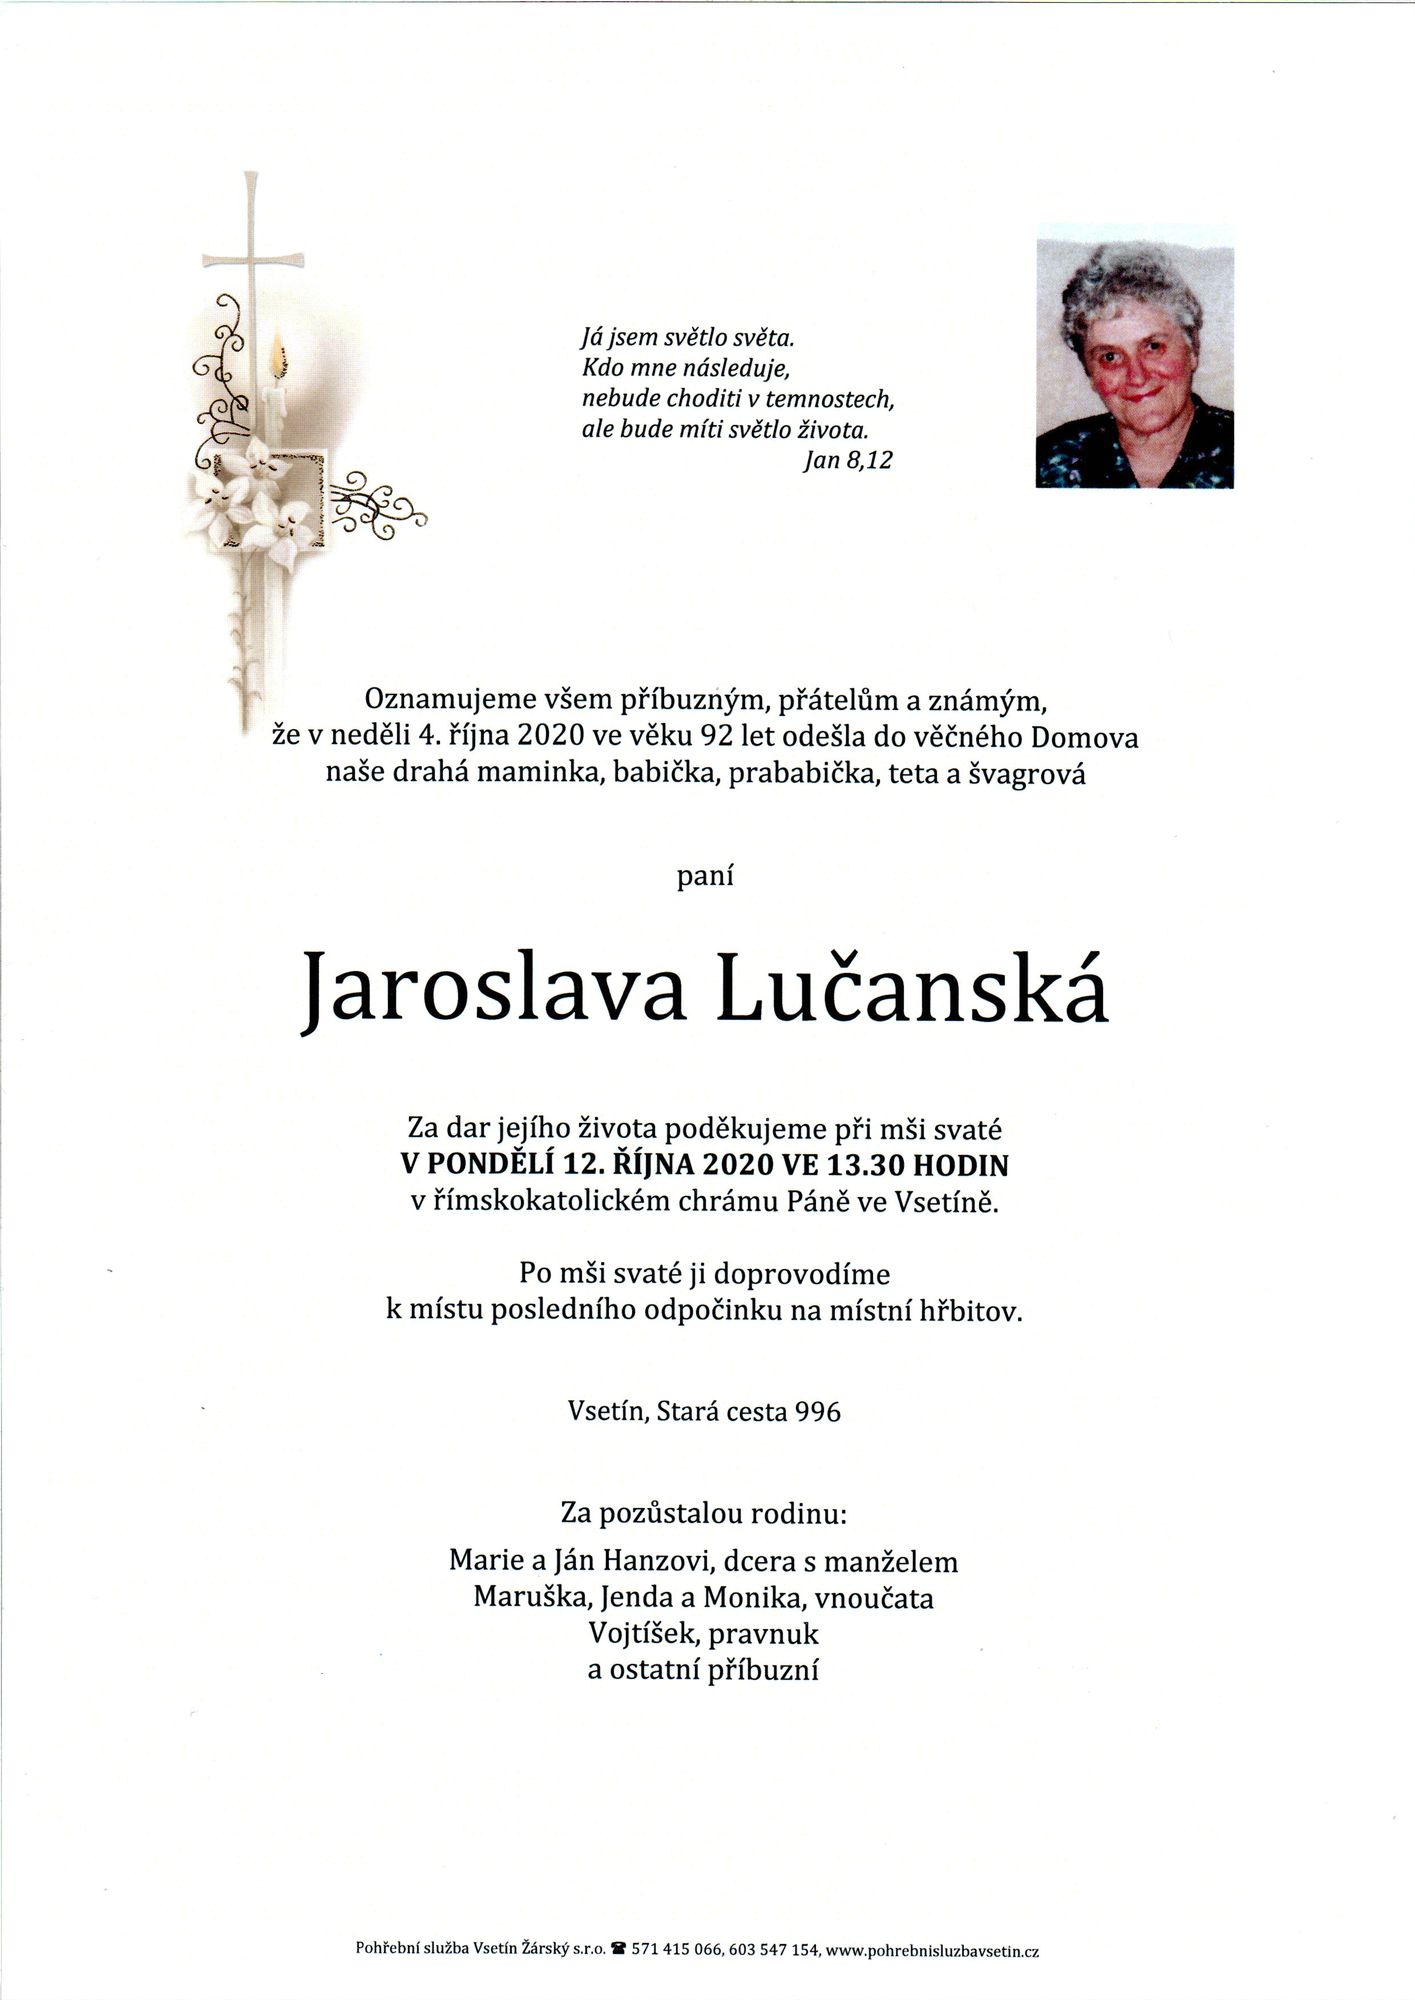 Jaroslava Lučanská